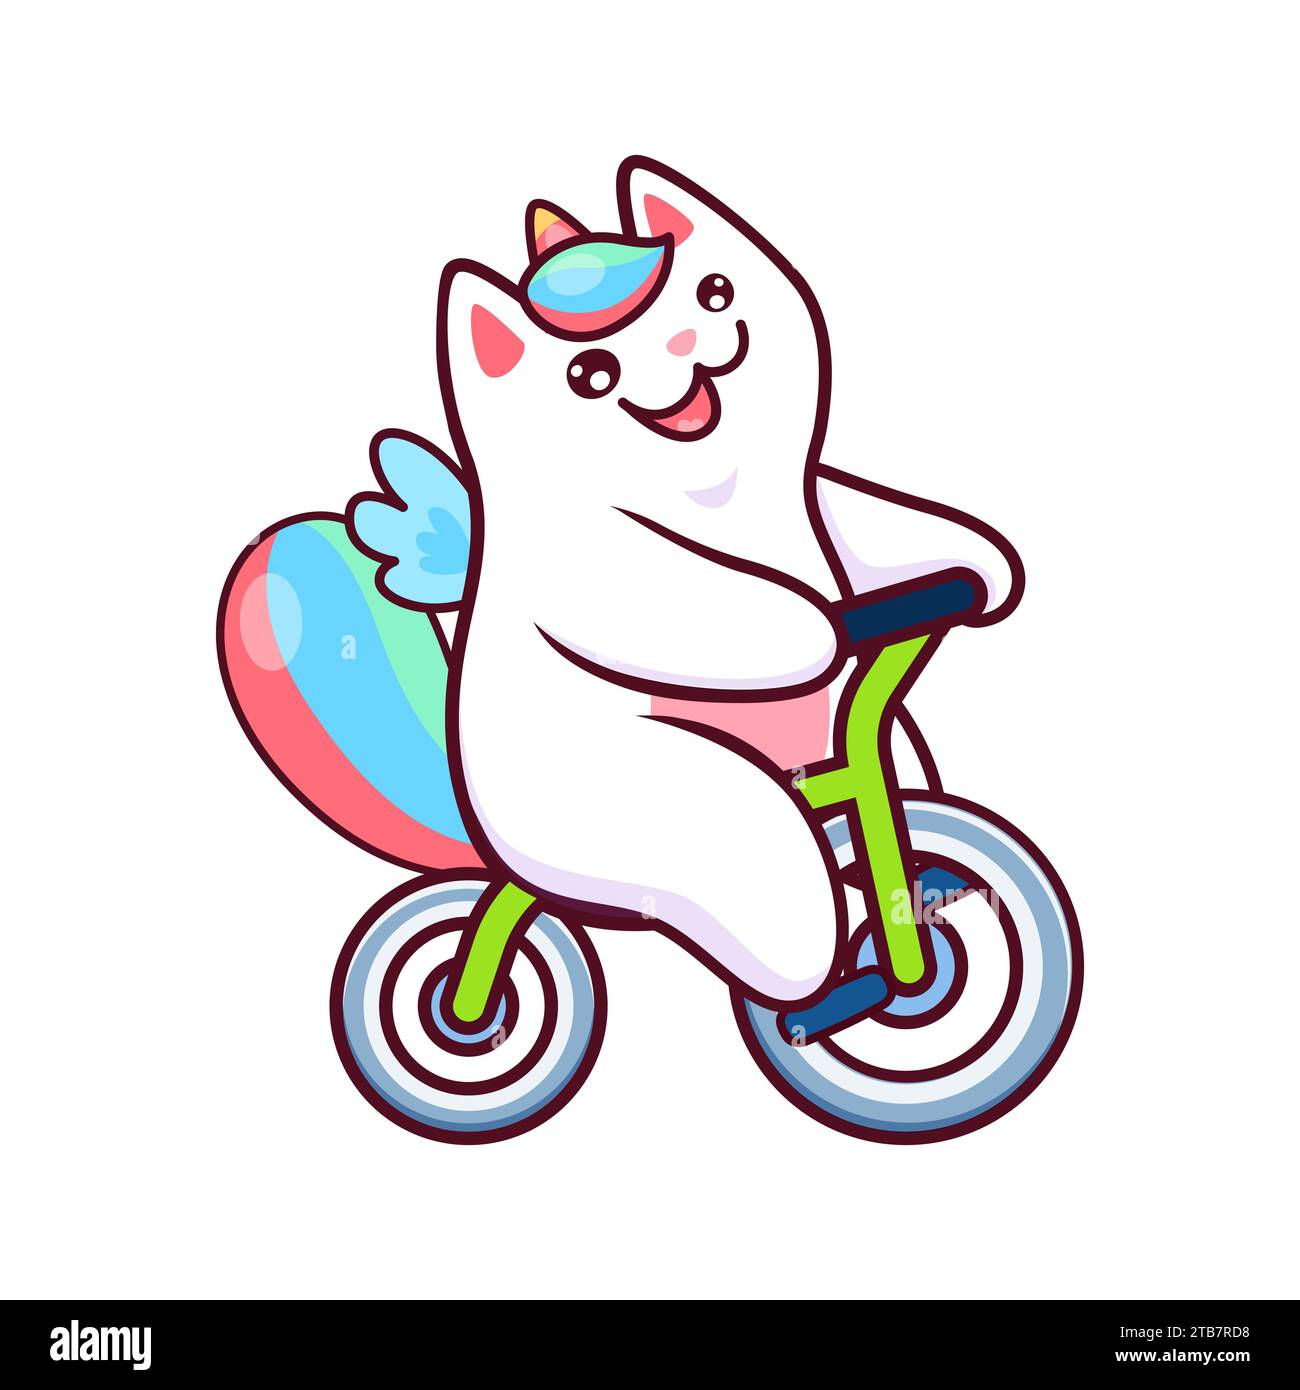 Cartoon Kawaii-Katicorn-Katze und Kätzchen-Haustier-Charakter, der mit Freude Fahrrad radelt und Niedlichkeit verbreitet. Isolierte Vektor-Magie Einhornkätzchen, Fantasy-Tier-Persönlichkeit, die Fahrrad mit glücklichem Gesicht reitet Stock Vektor